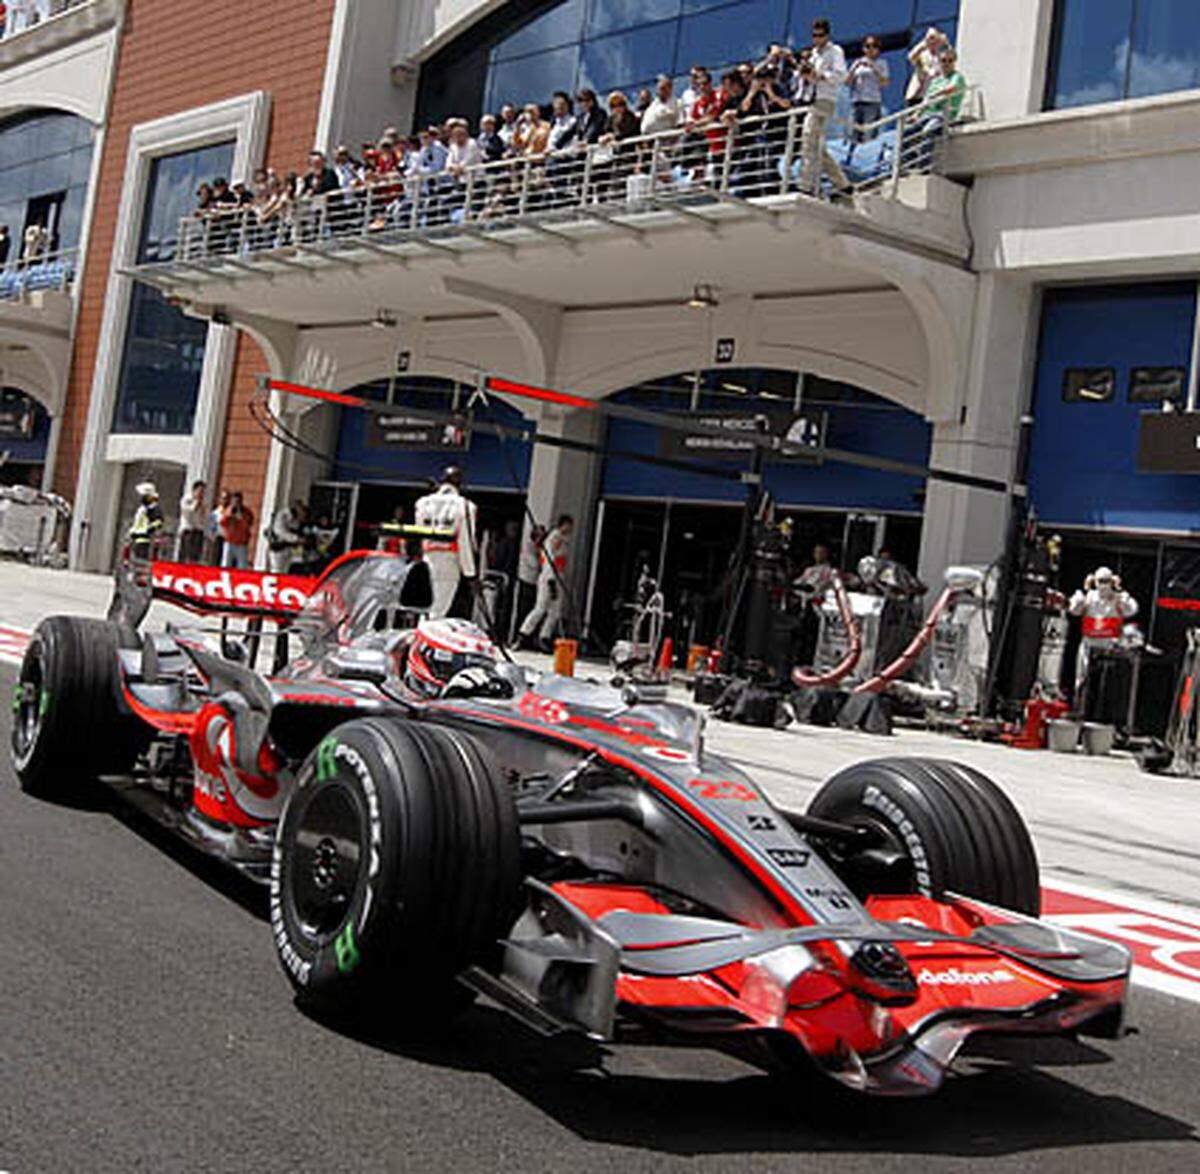 Seit 2005 werden 80 Kilometer vom Zentrum der türkischen Hauptstadt entfernt Formel-1-Rennen abgehalten. Ferrari-Pilot Felipe Massa hat besonders gute Erinnerungen an diese Strecke: 2006, 2007 und 2008 konnte der Brasilianer hier gewinnen.